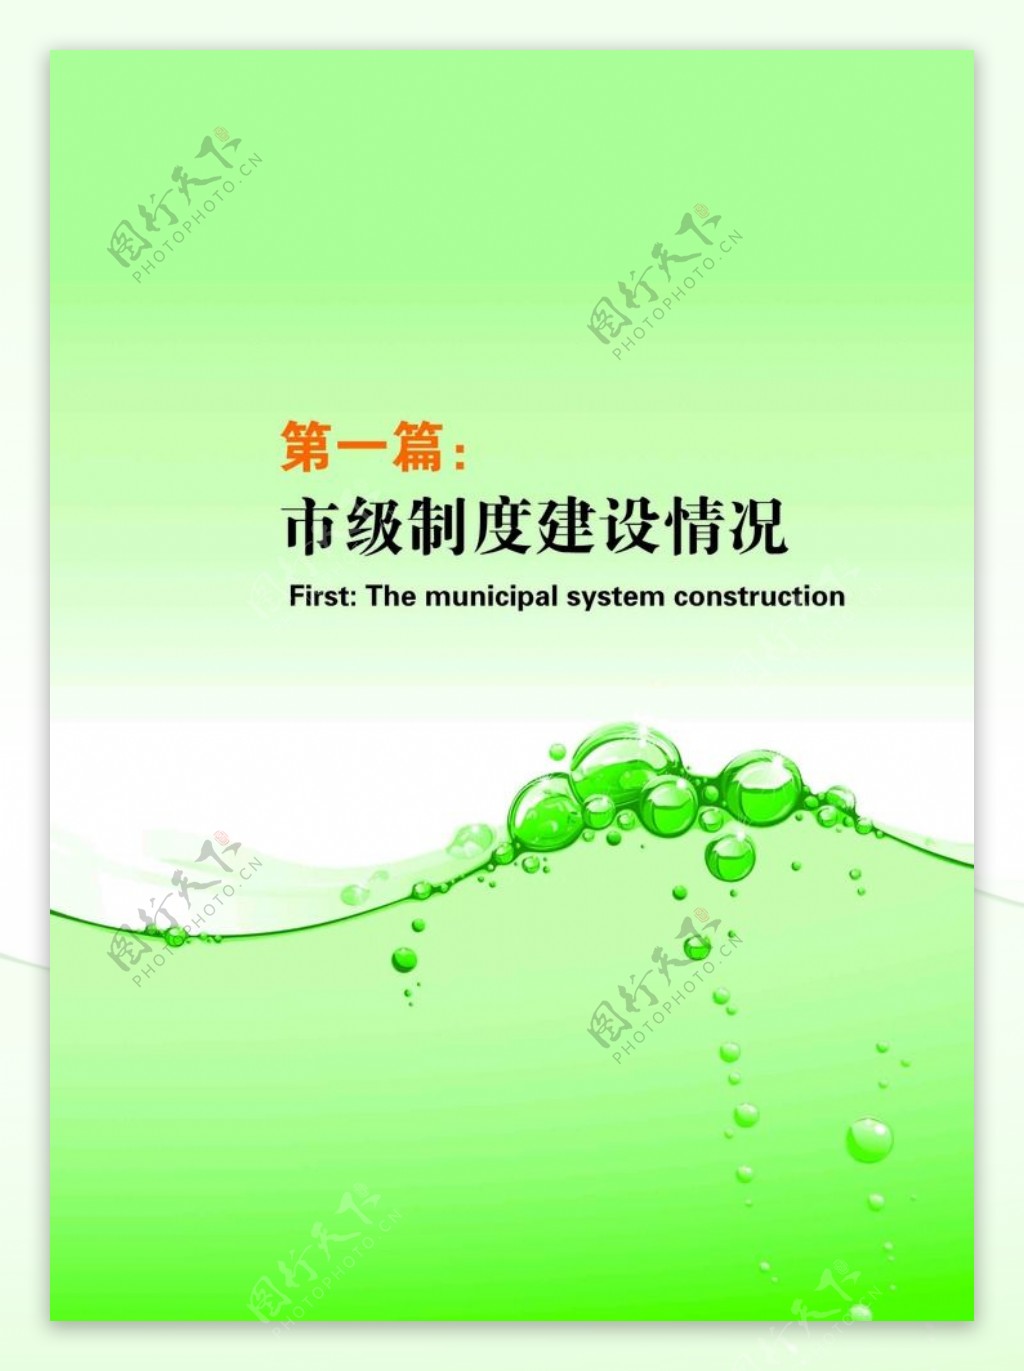 绿色节水封皮图片